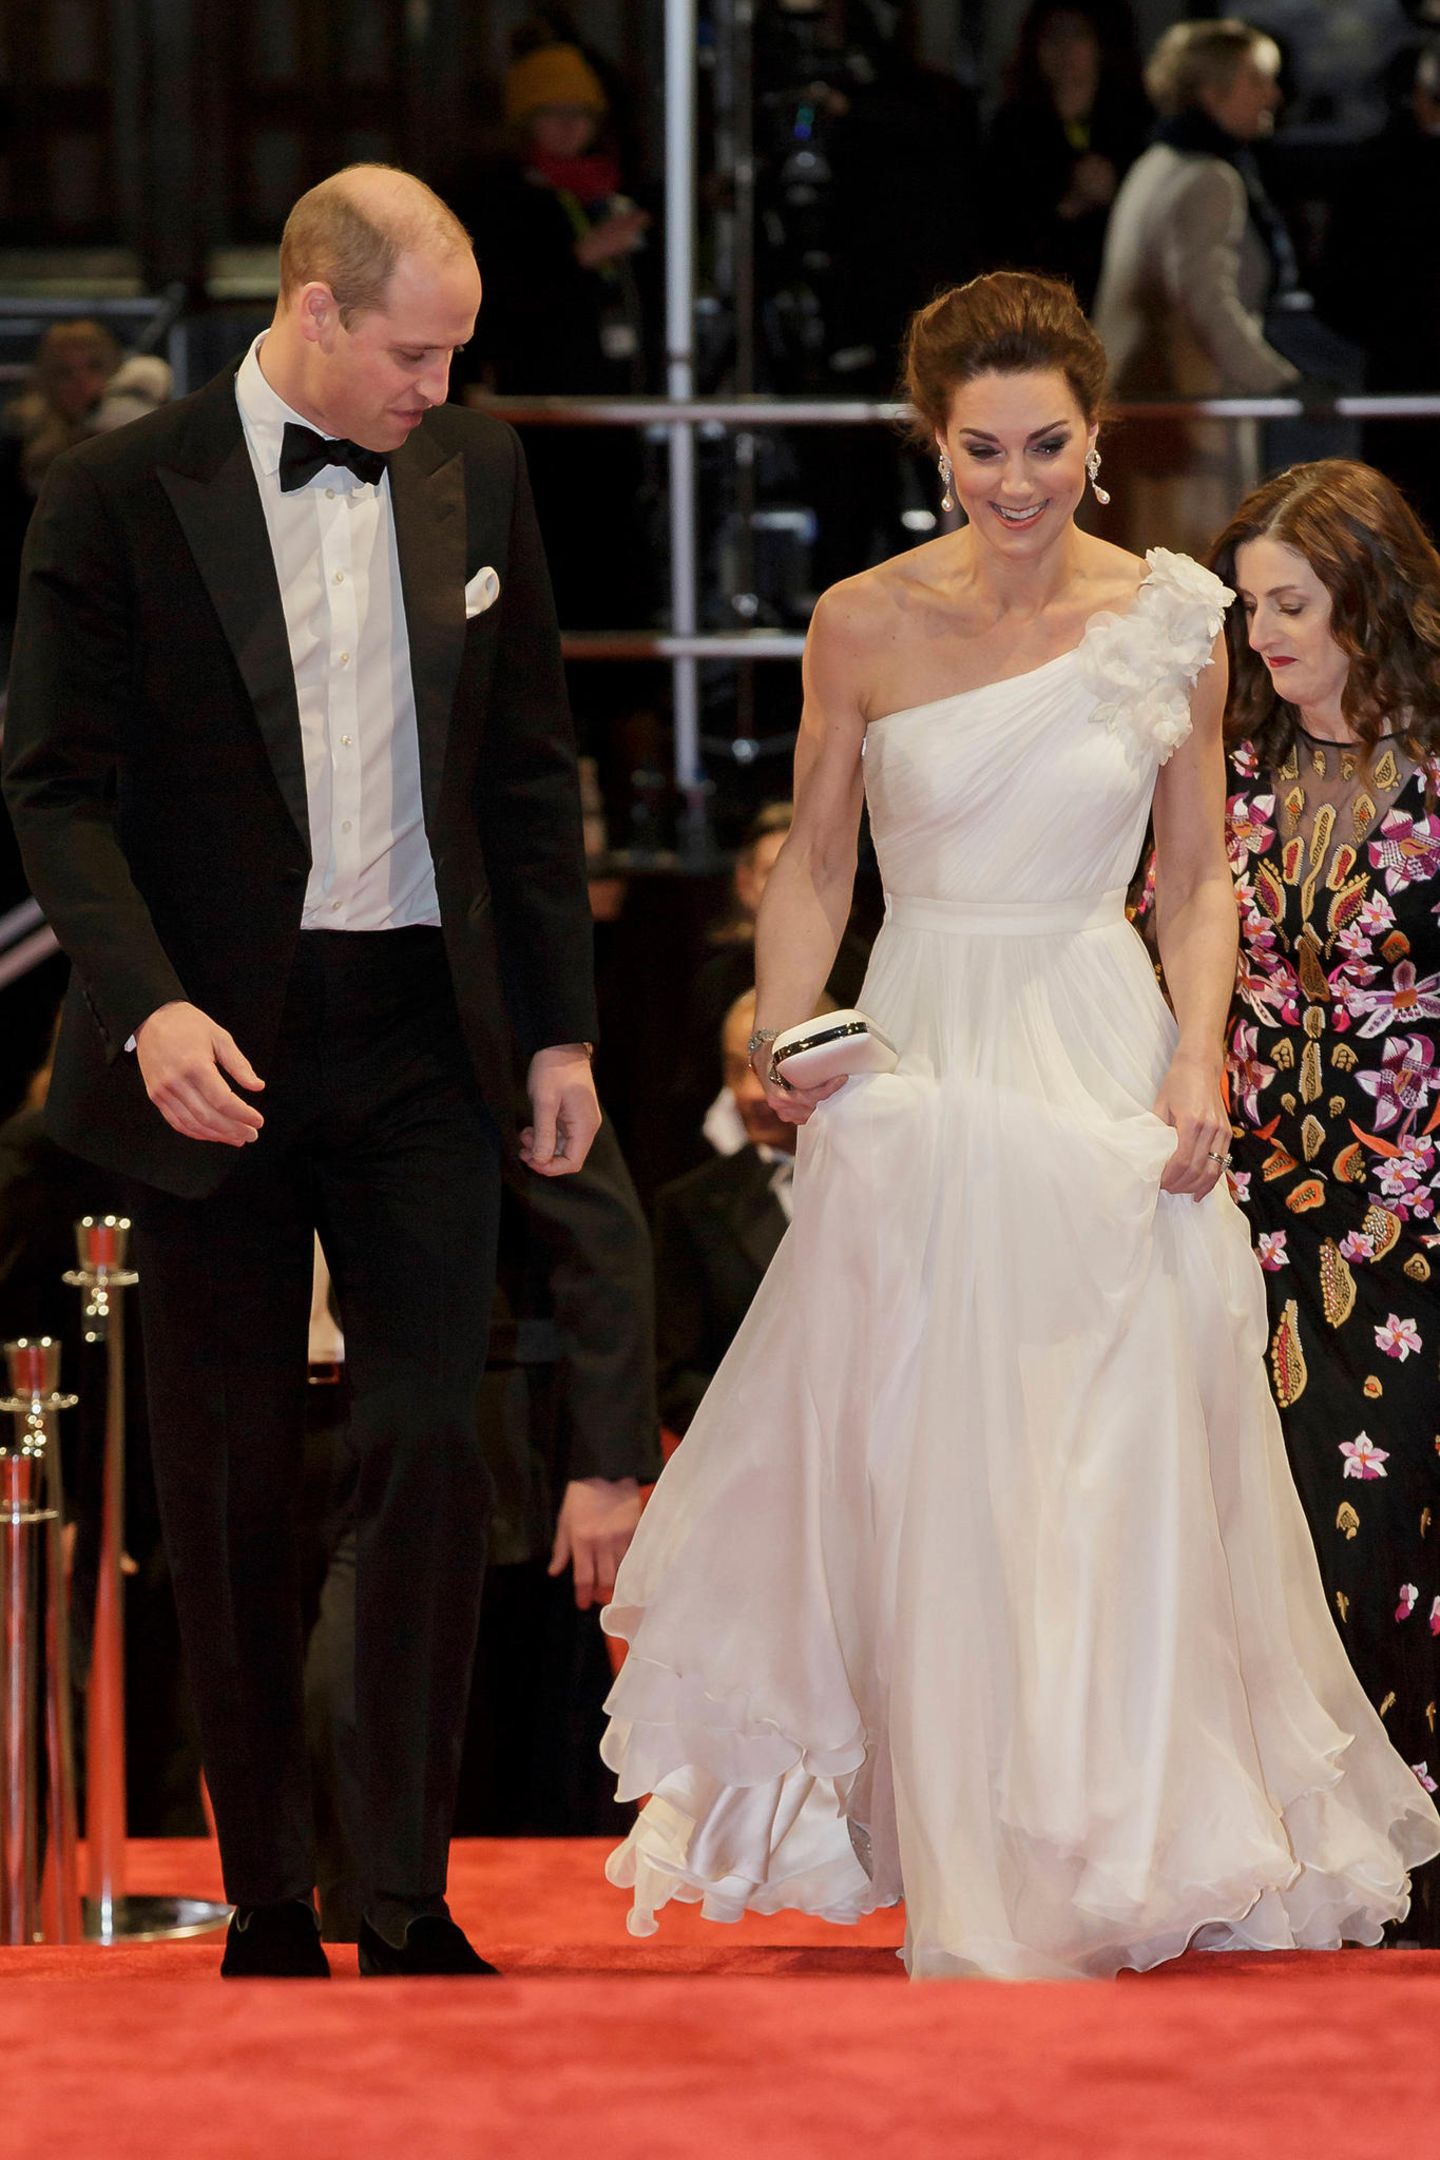 10. Februar 2019  Bei der Verleihung der "British Academy Film Awards" (Bafta) passt William auf, dass seine Liebste nicht über ihr Kleid stolpert.